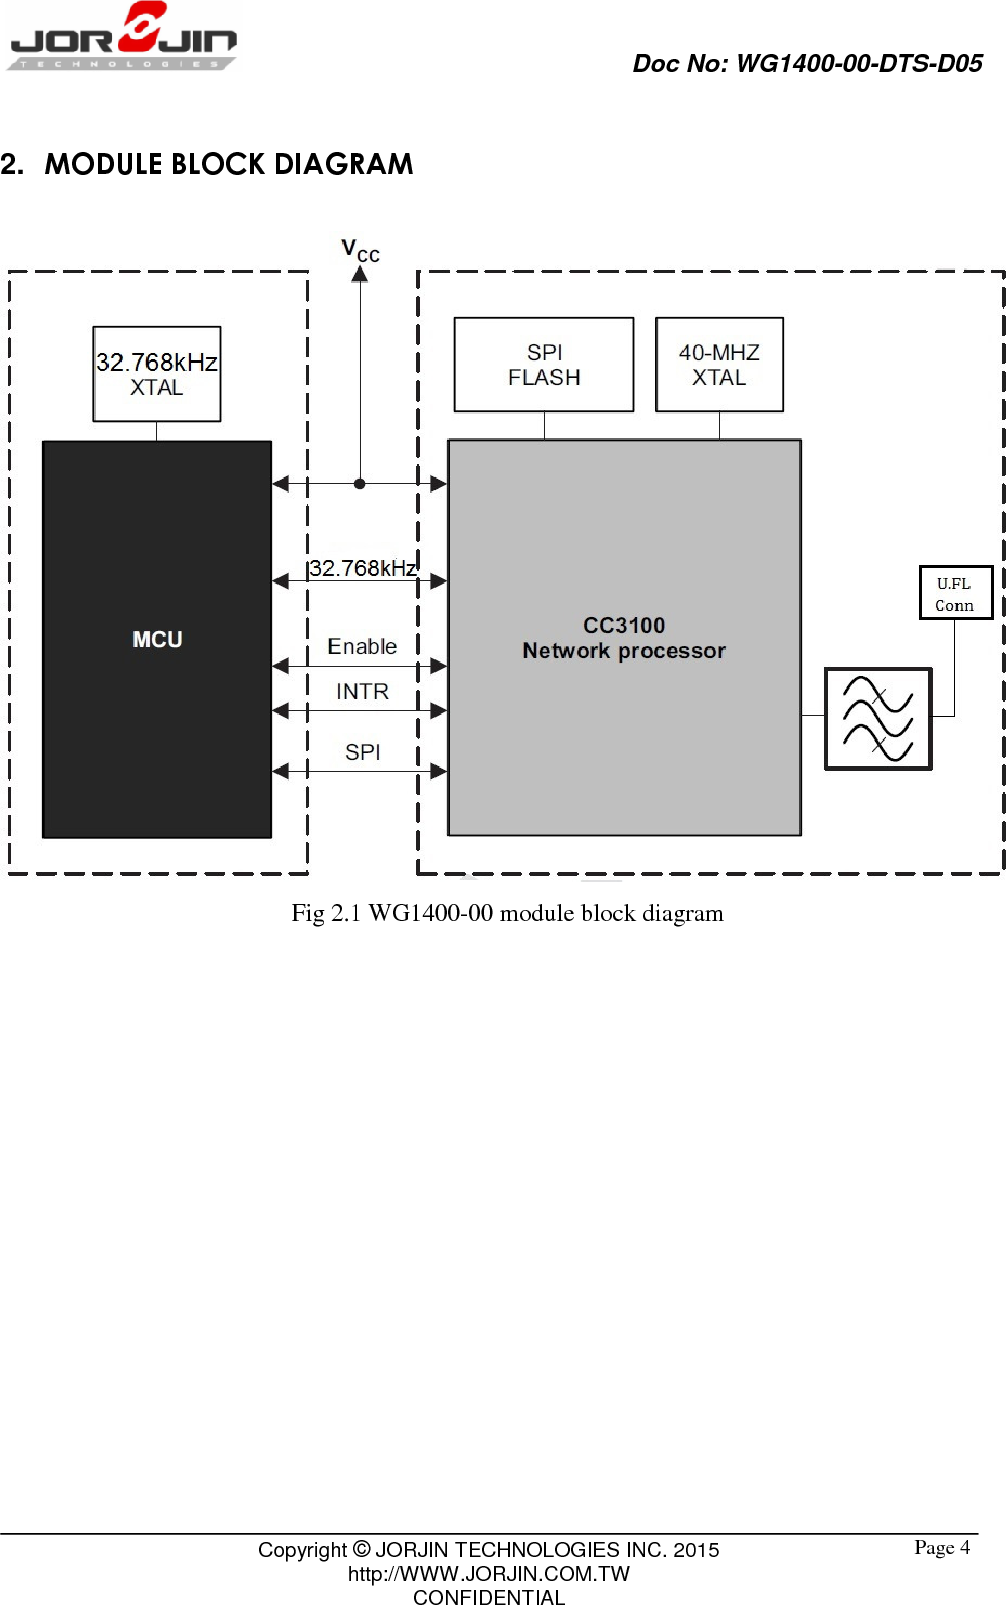                                Doc No: WG1400-00-DTS-D05                                                                                                 Copyright © JORJIN TECHNOLOGIES INC. 2015 http://WWW.JORJIN.COM.TW CONFIDENTIAL  Page 42.  MODULE BLOCK DIAGRAM  Fig 2.1 WG1400-00 module block diagram   